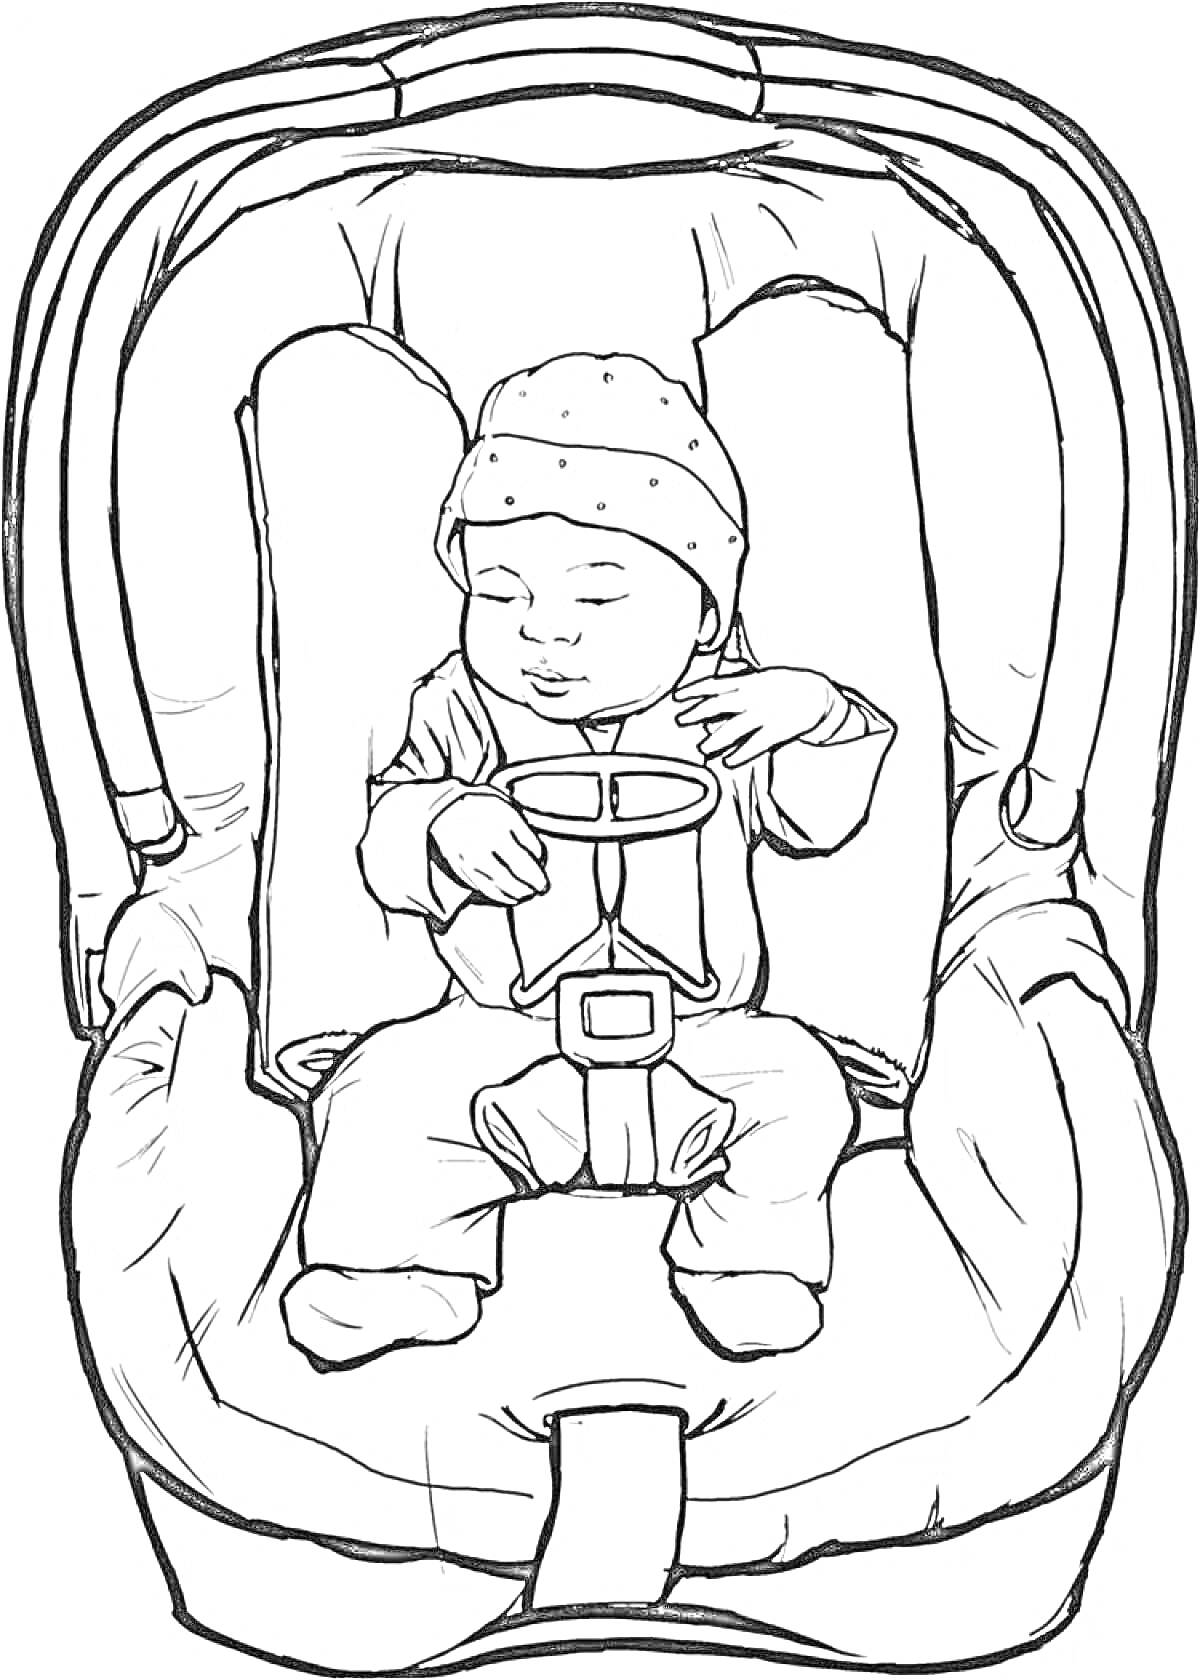 Раскраска Малыш в автокресле, малыш спит в автокресле, одет в шапочку и куртку, пристёгнут ремнями безопасности